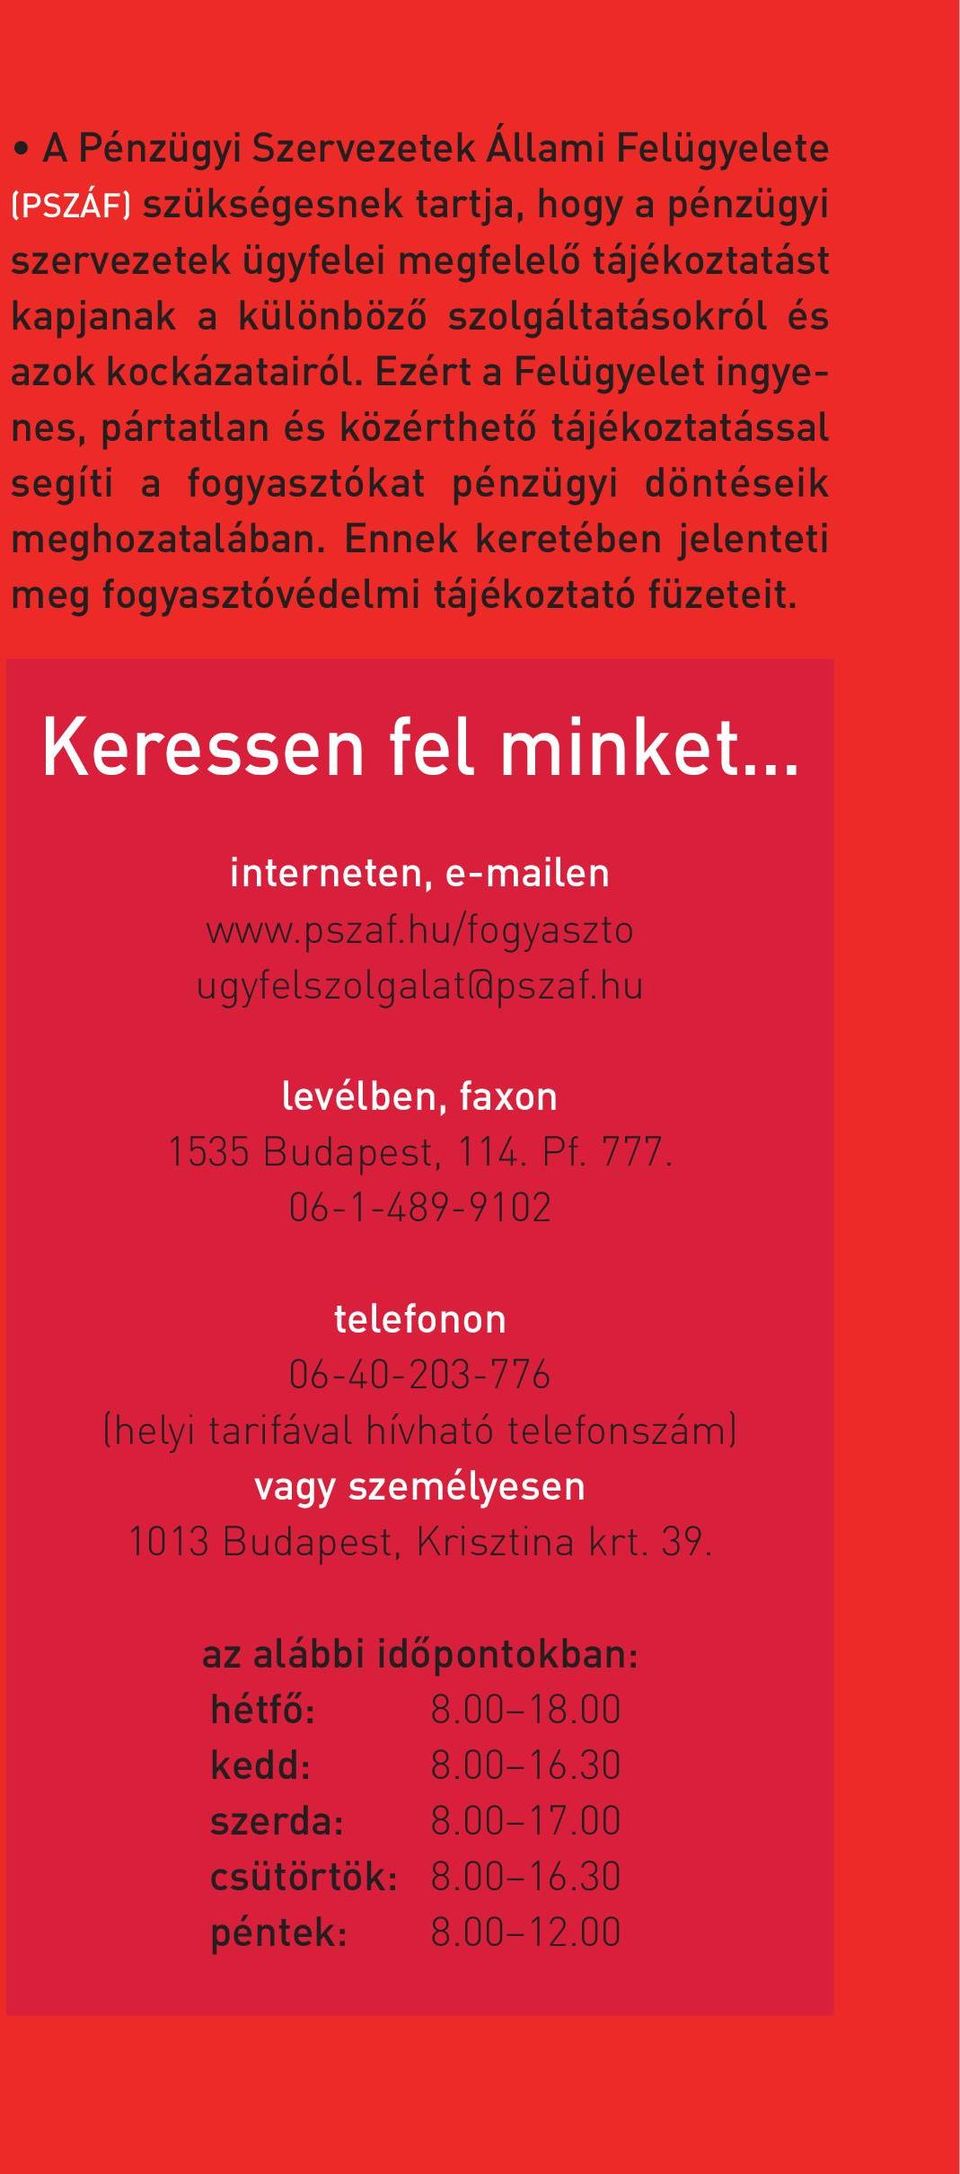 Ennek keretében jelenteti meg fogyasztóvédelmi tájékoztató füzeteit. Keressen fel minket interneten, e-mailen www.pszaf.hu/fogyaszto ugyfelszolgalat@pszaf.